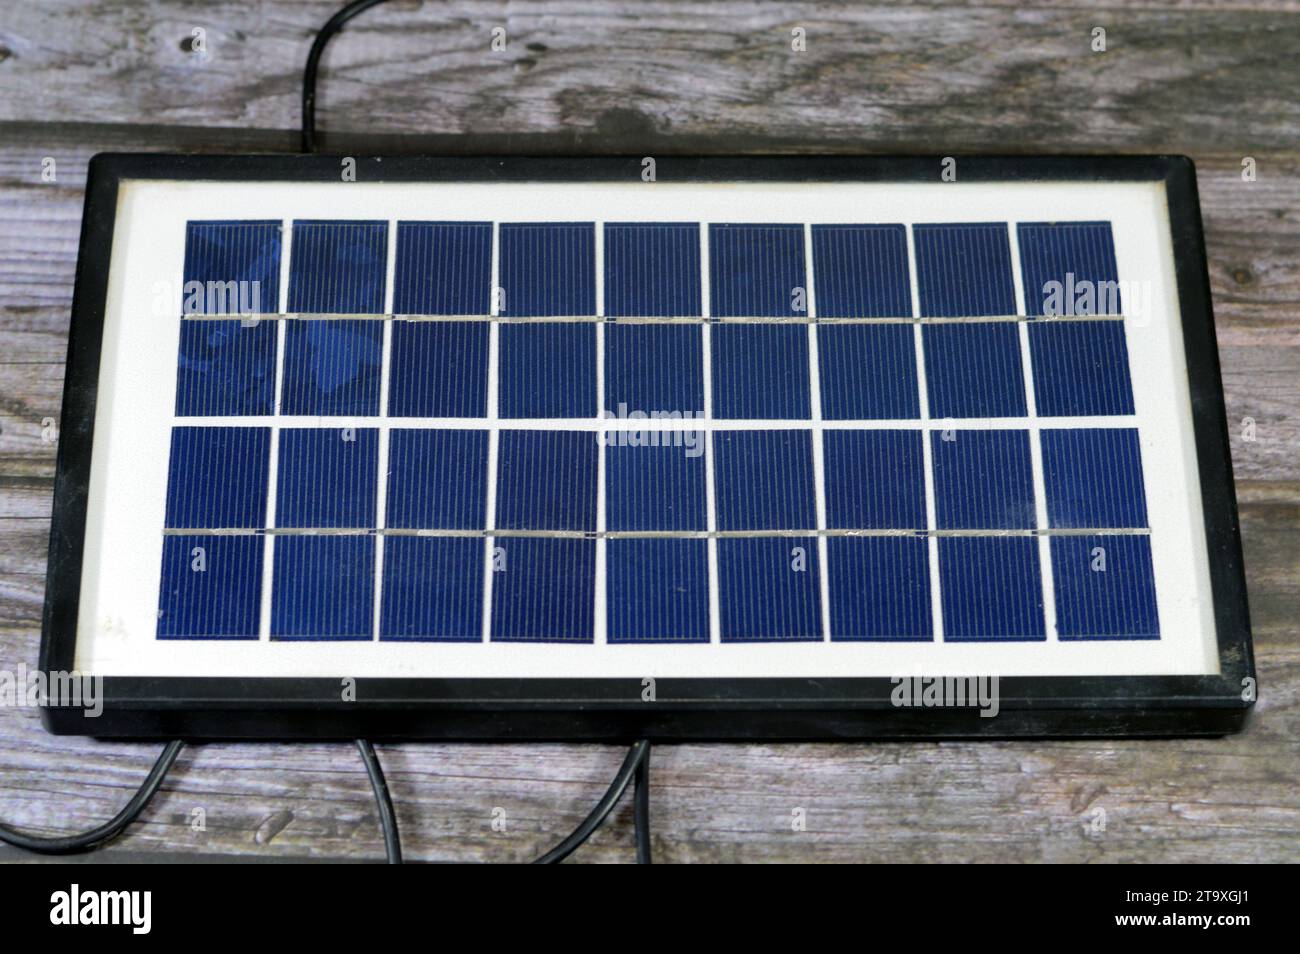 Un pannello solare, un dispositivo che converte la luce solare in elettricità utilizzando celle fotovoltaiche (PV) realizzate con materiali che generano elettroni quando Foto Stock